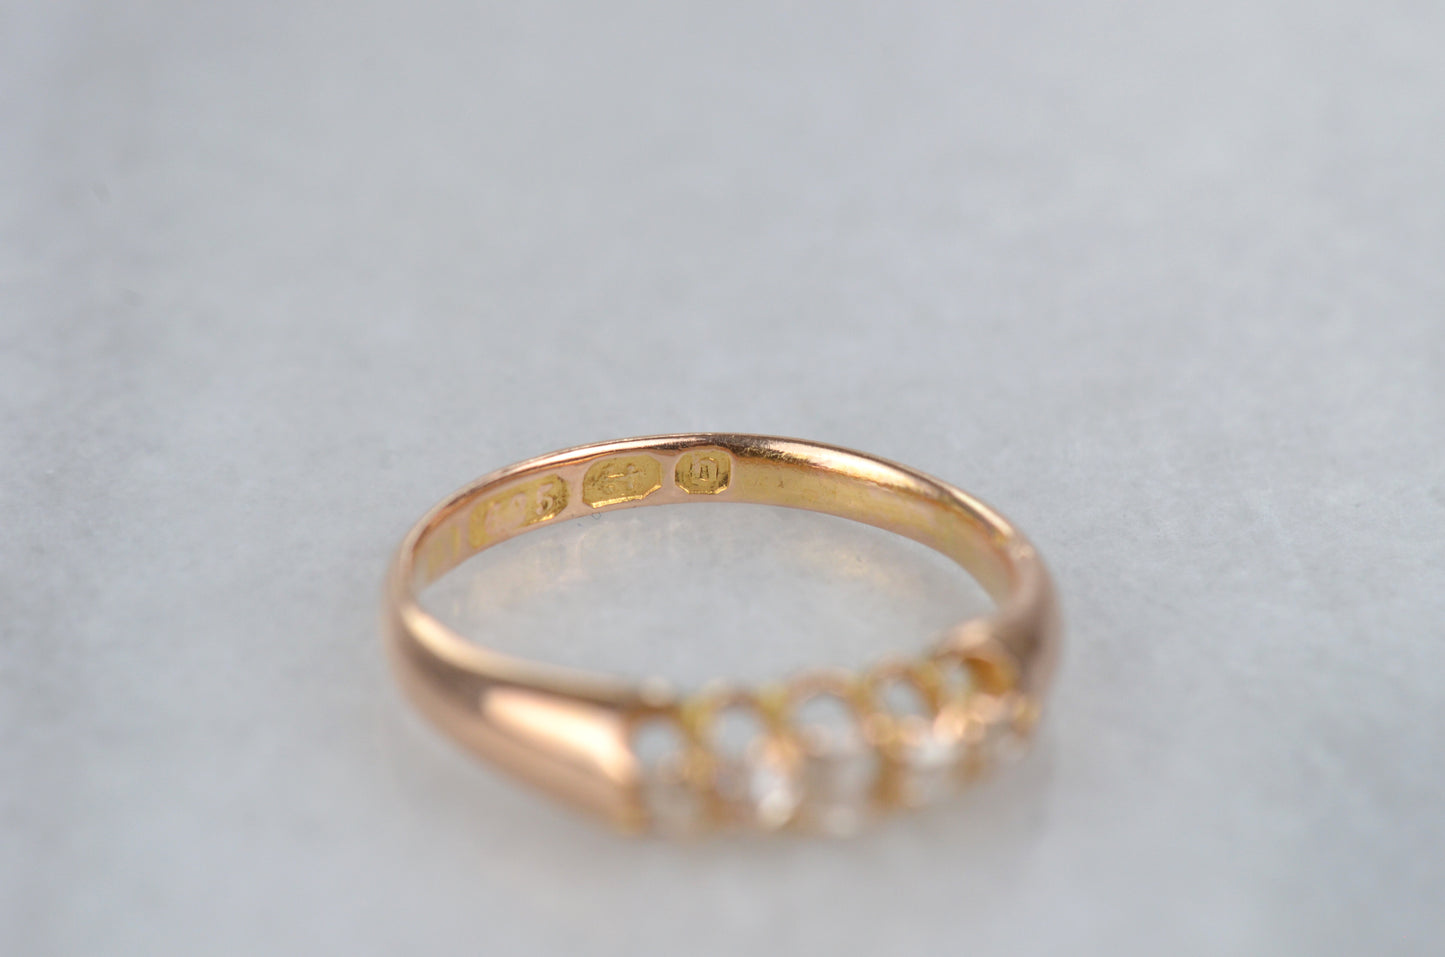 Delightfully Odd Victorian Diamond Ring